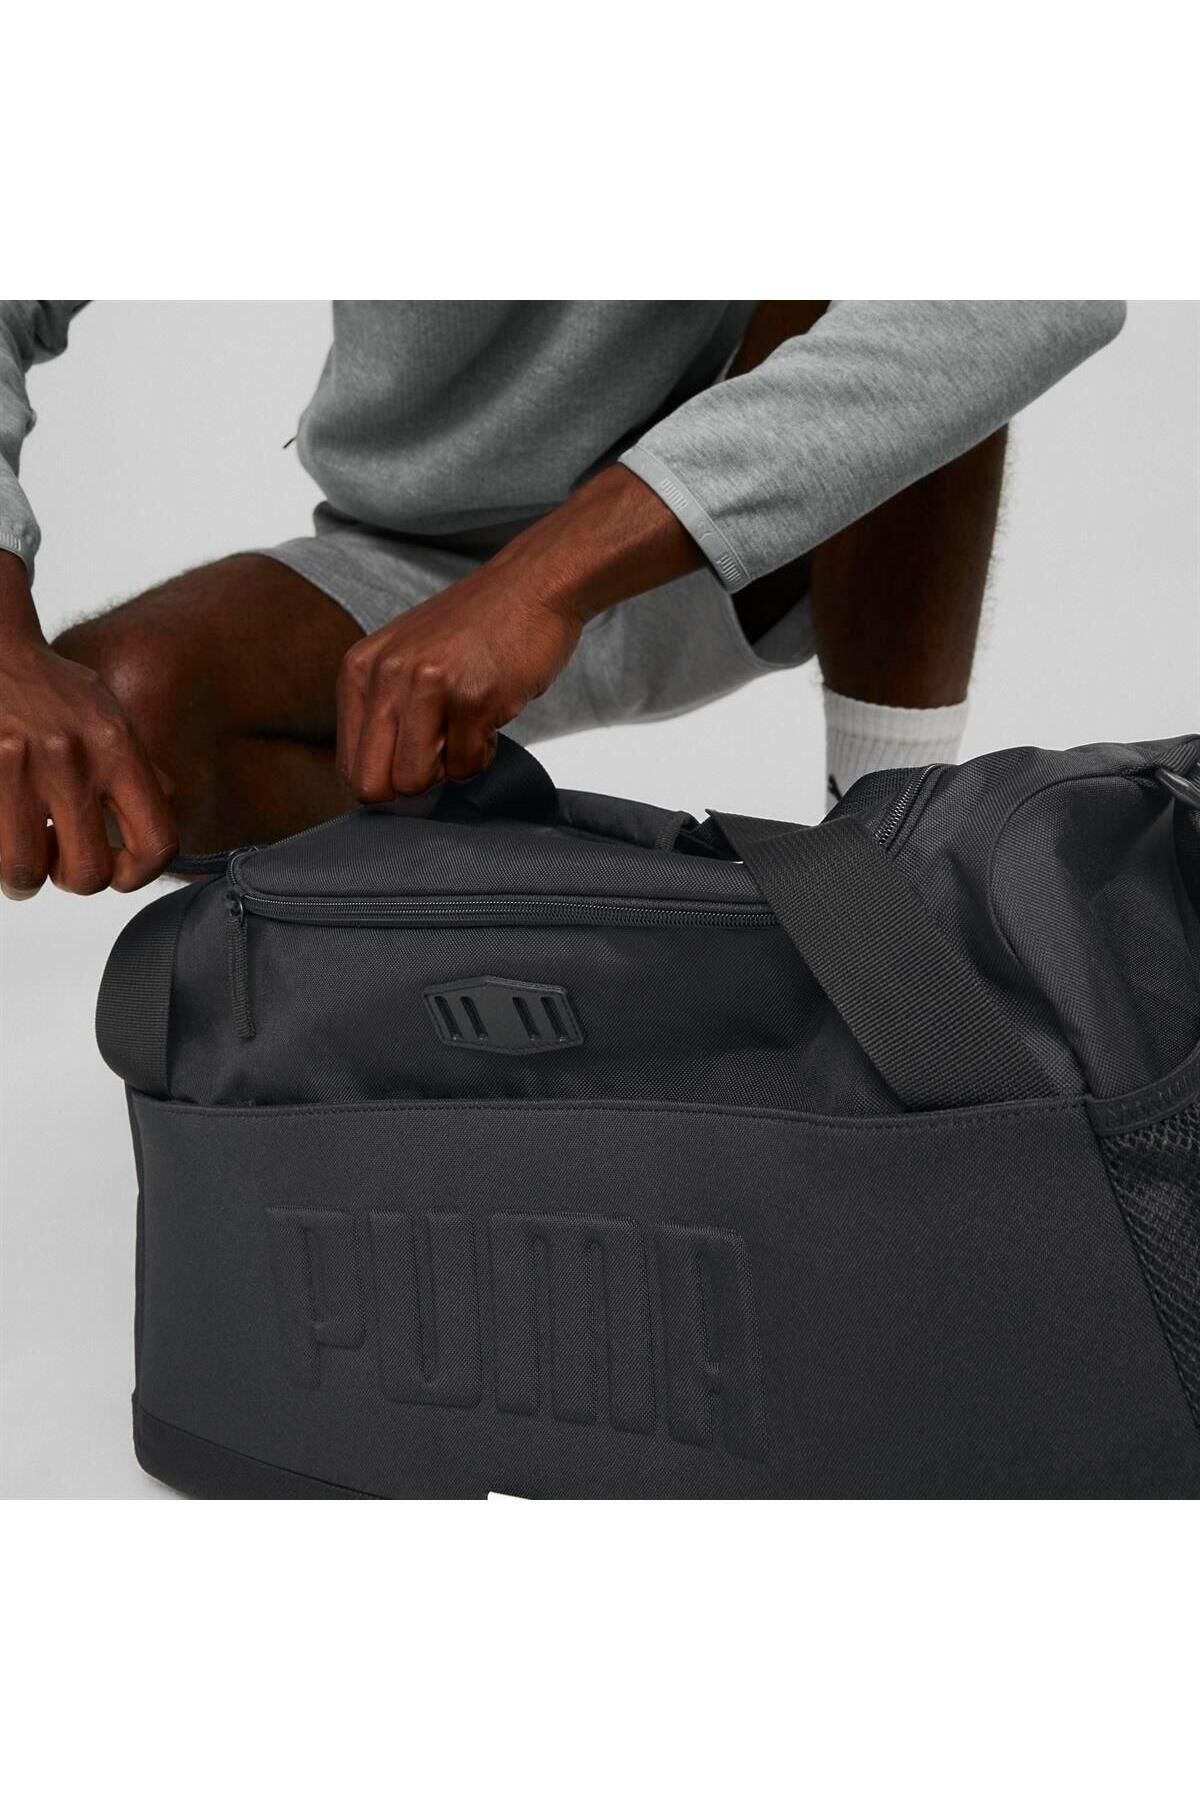 Puma کیف ورزشی S BAG یونیسکس